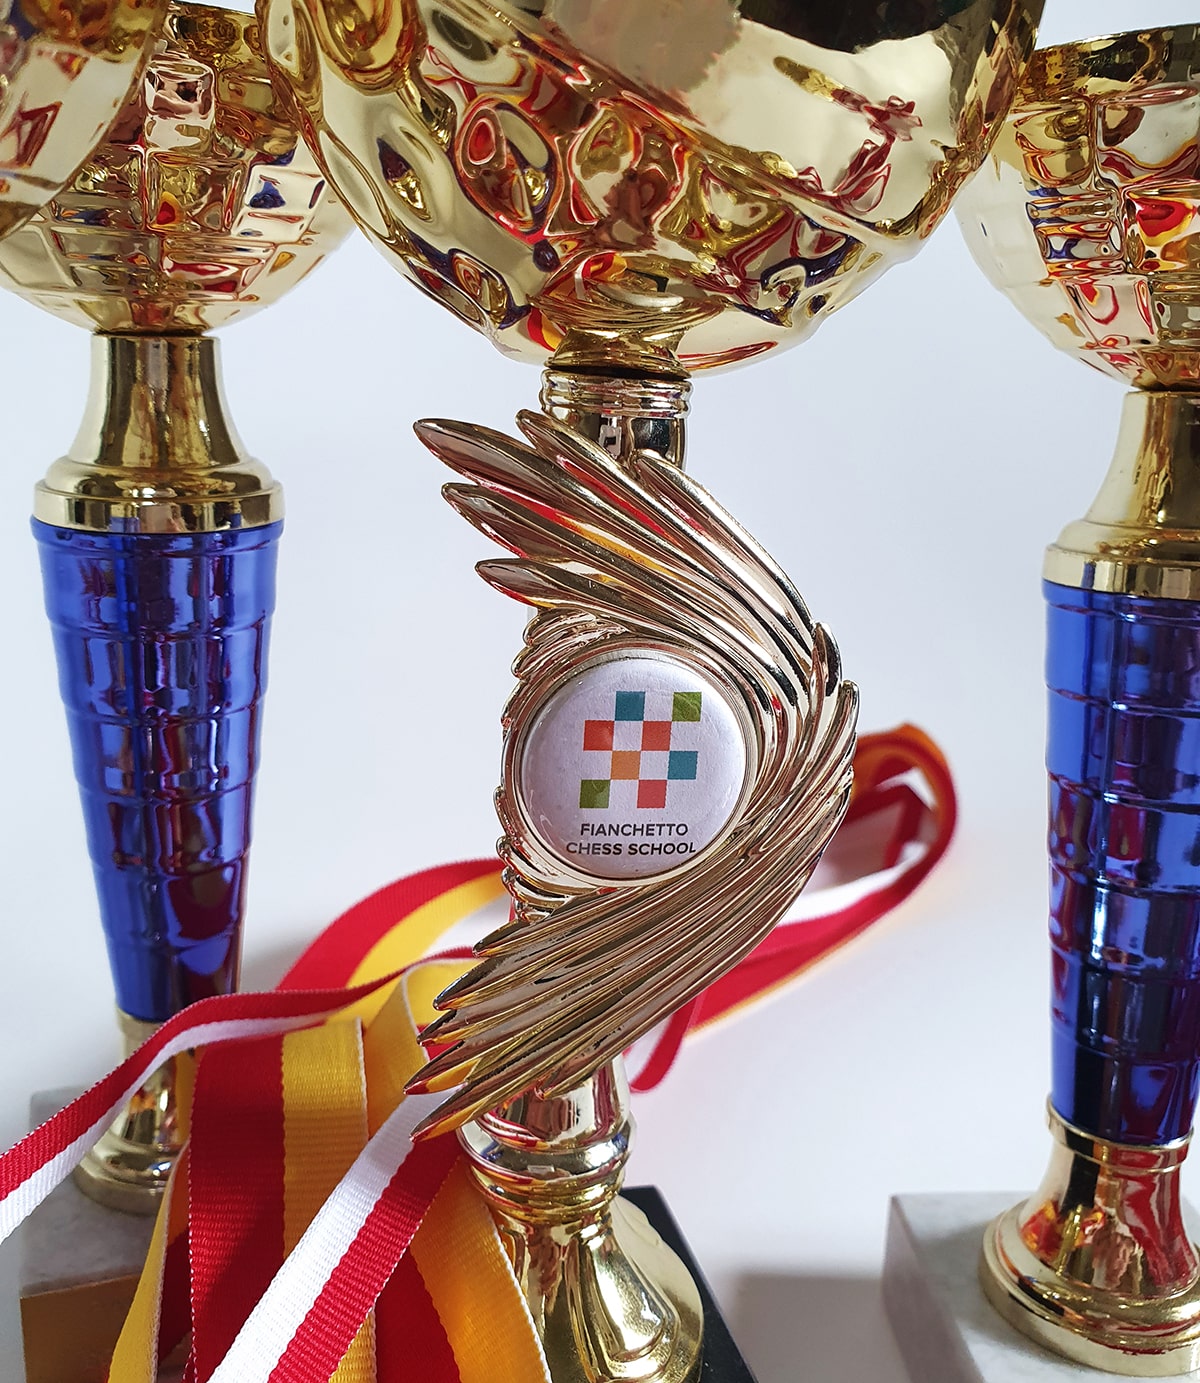 Кубок Фианкетто 2023 - онлайн-турнир по шахматам